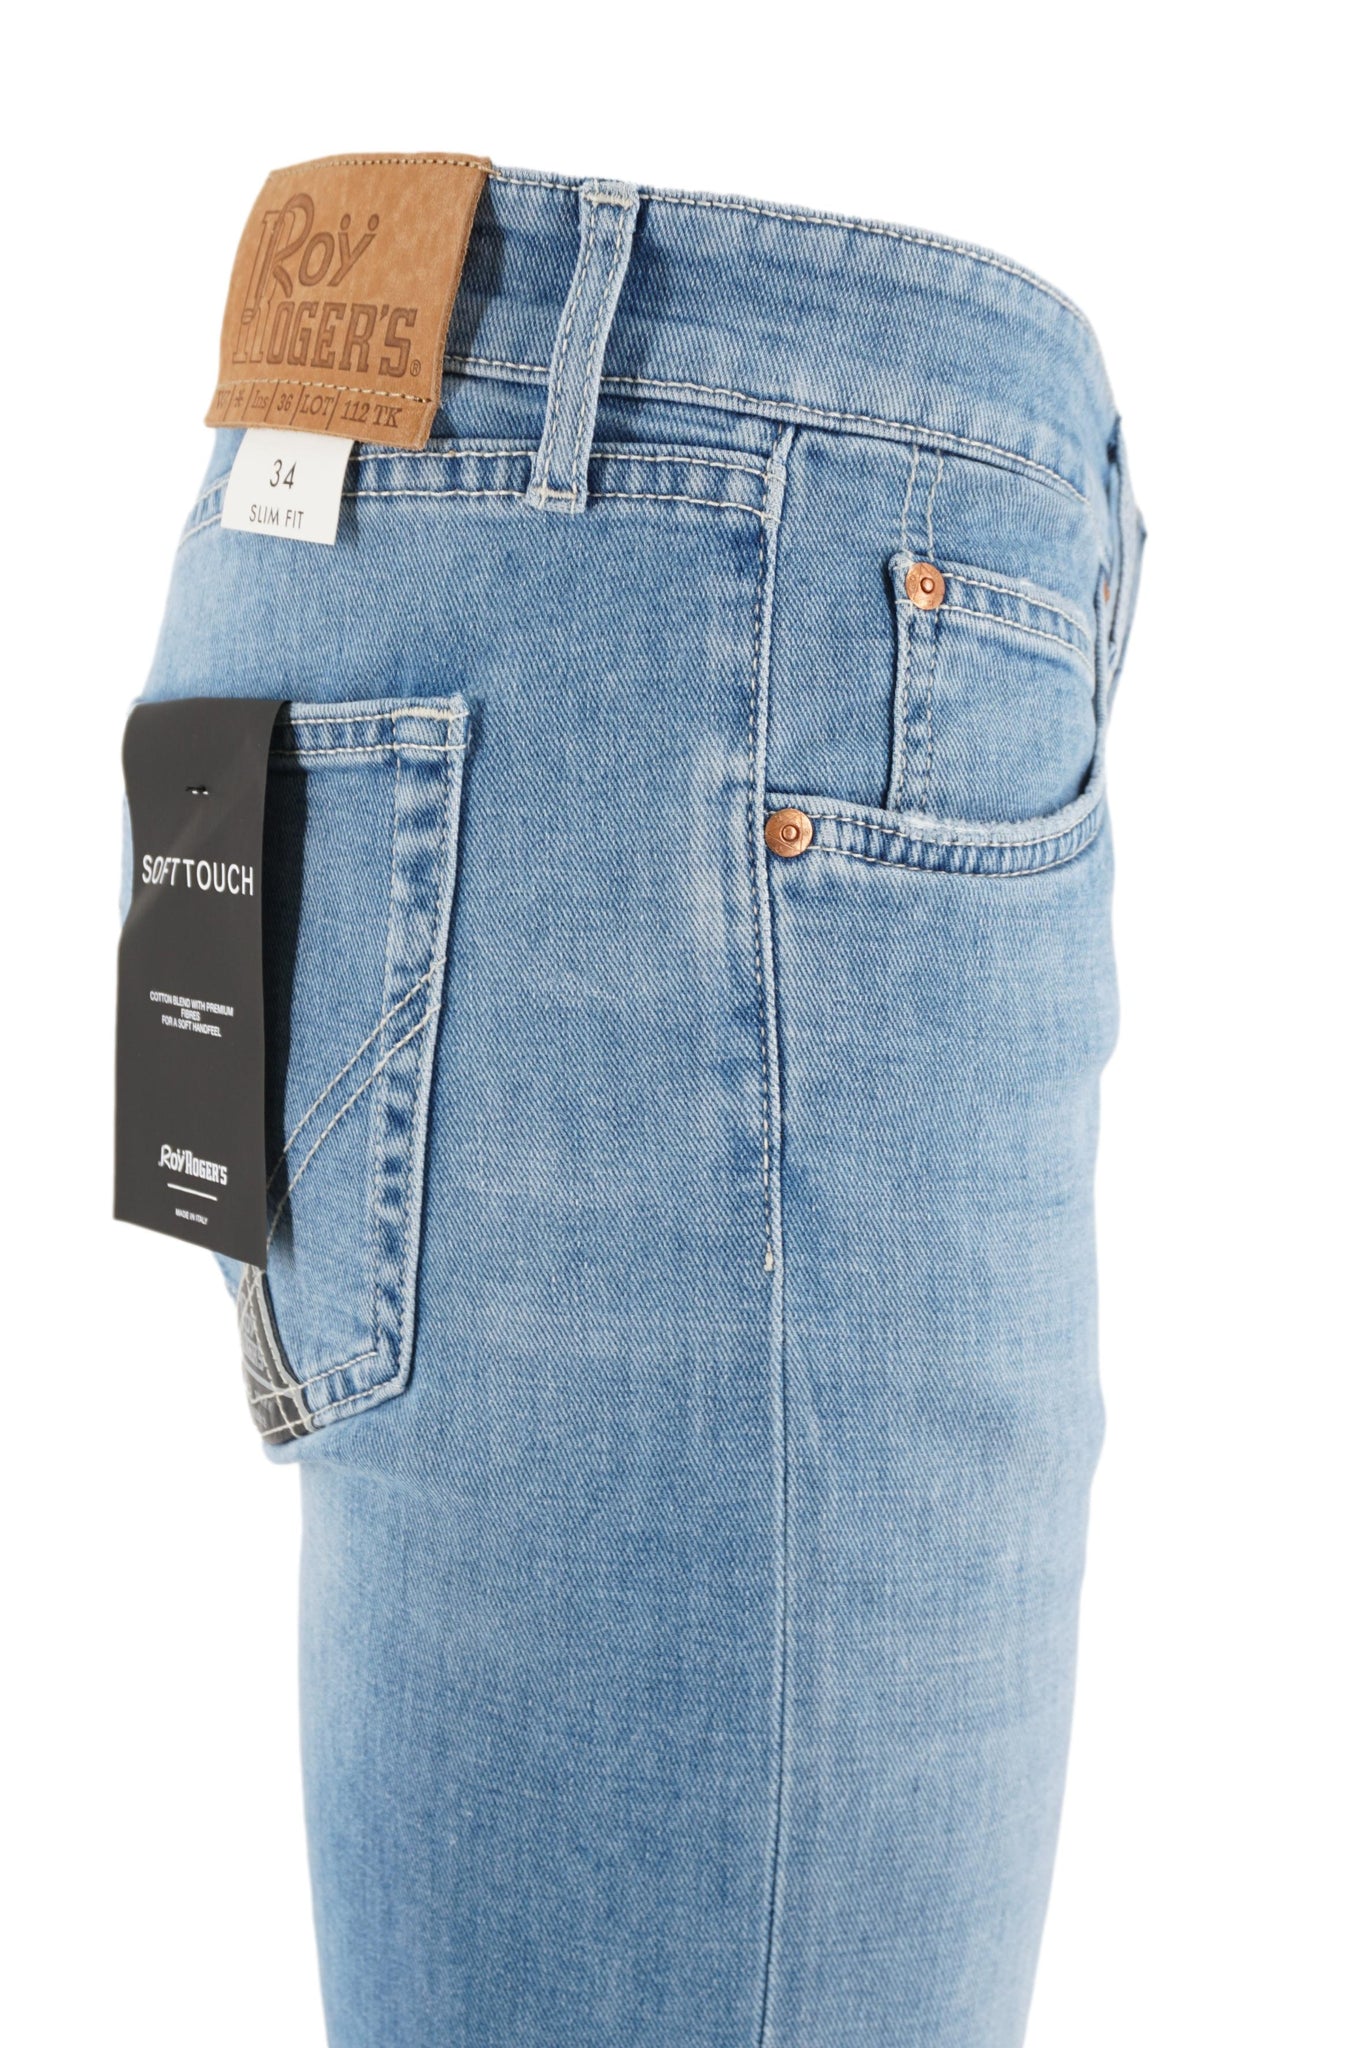 Jeans 518 Lavaggio Chiaro / Jeans - Ideal Moda